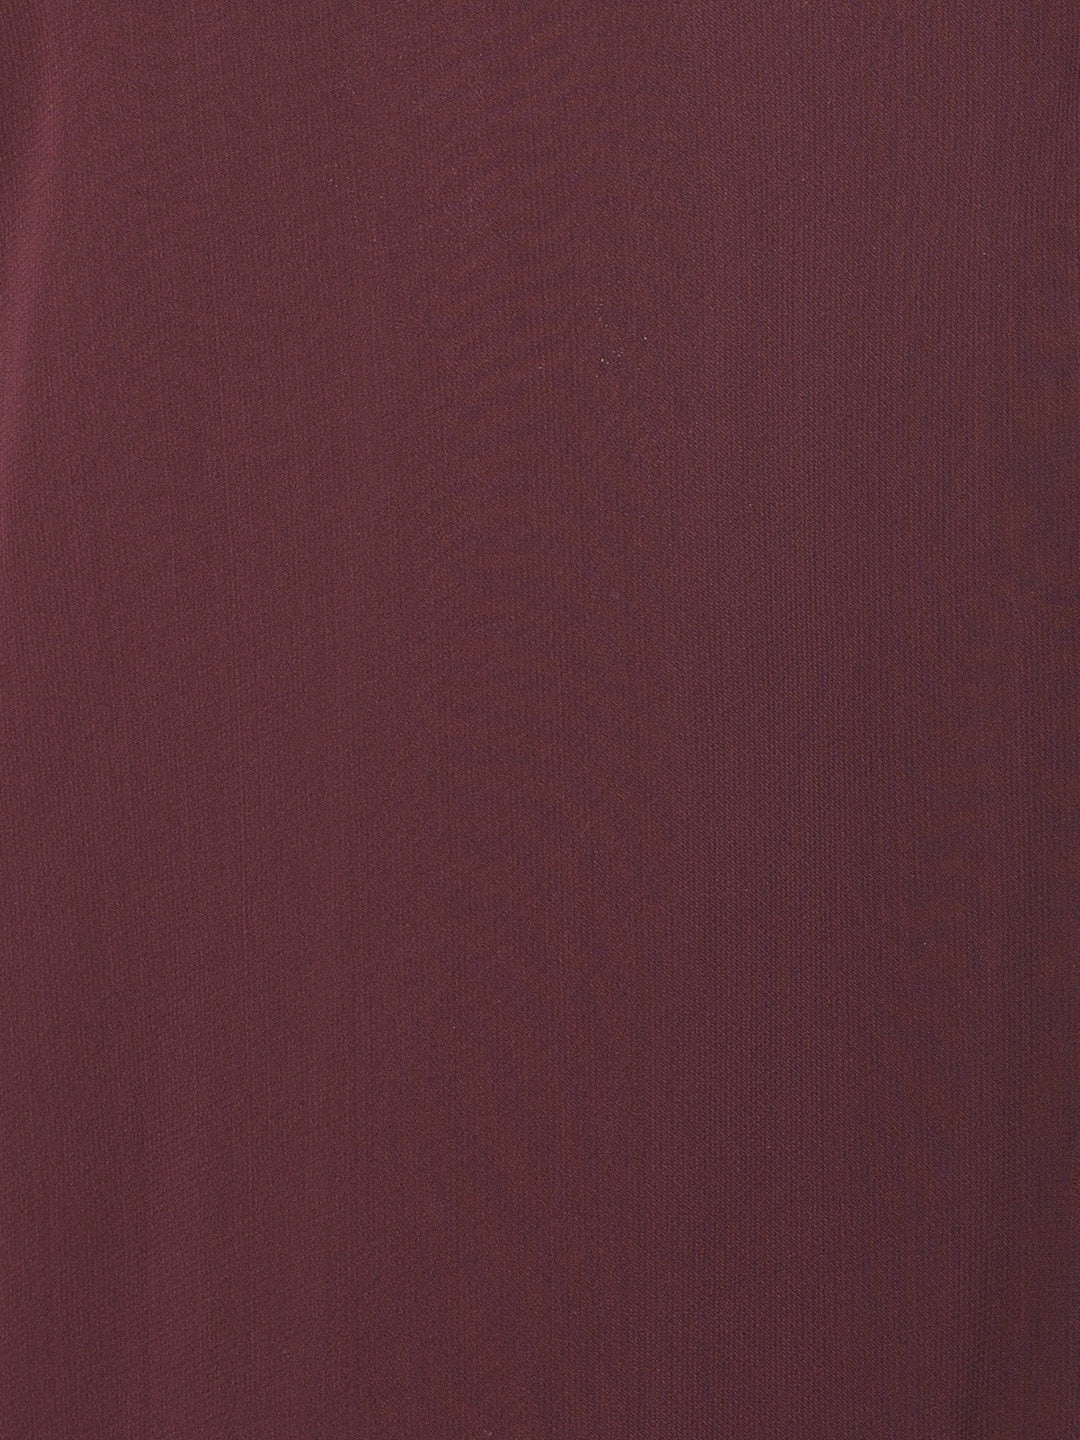 Neeru's'S Wine Color Georgette Fabric Suit-Peplum